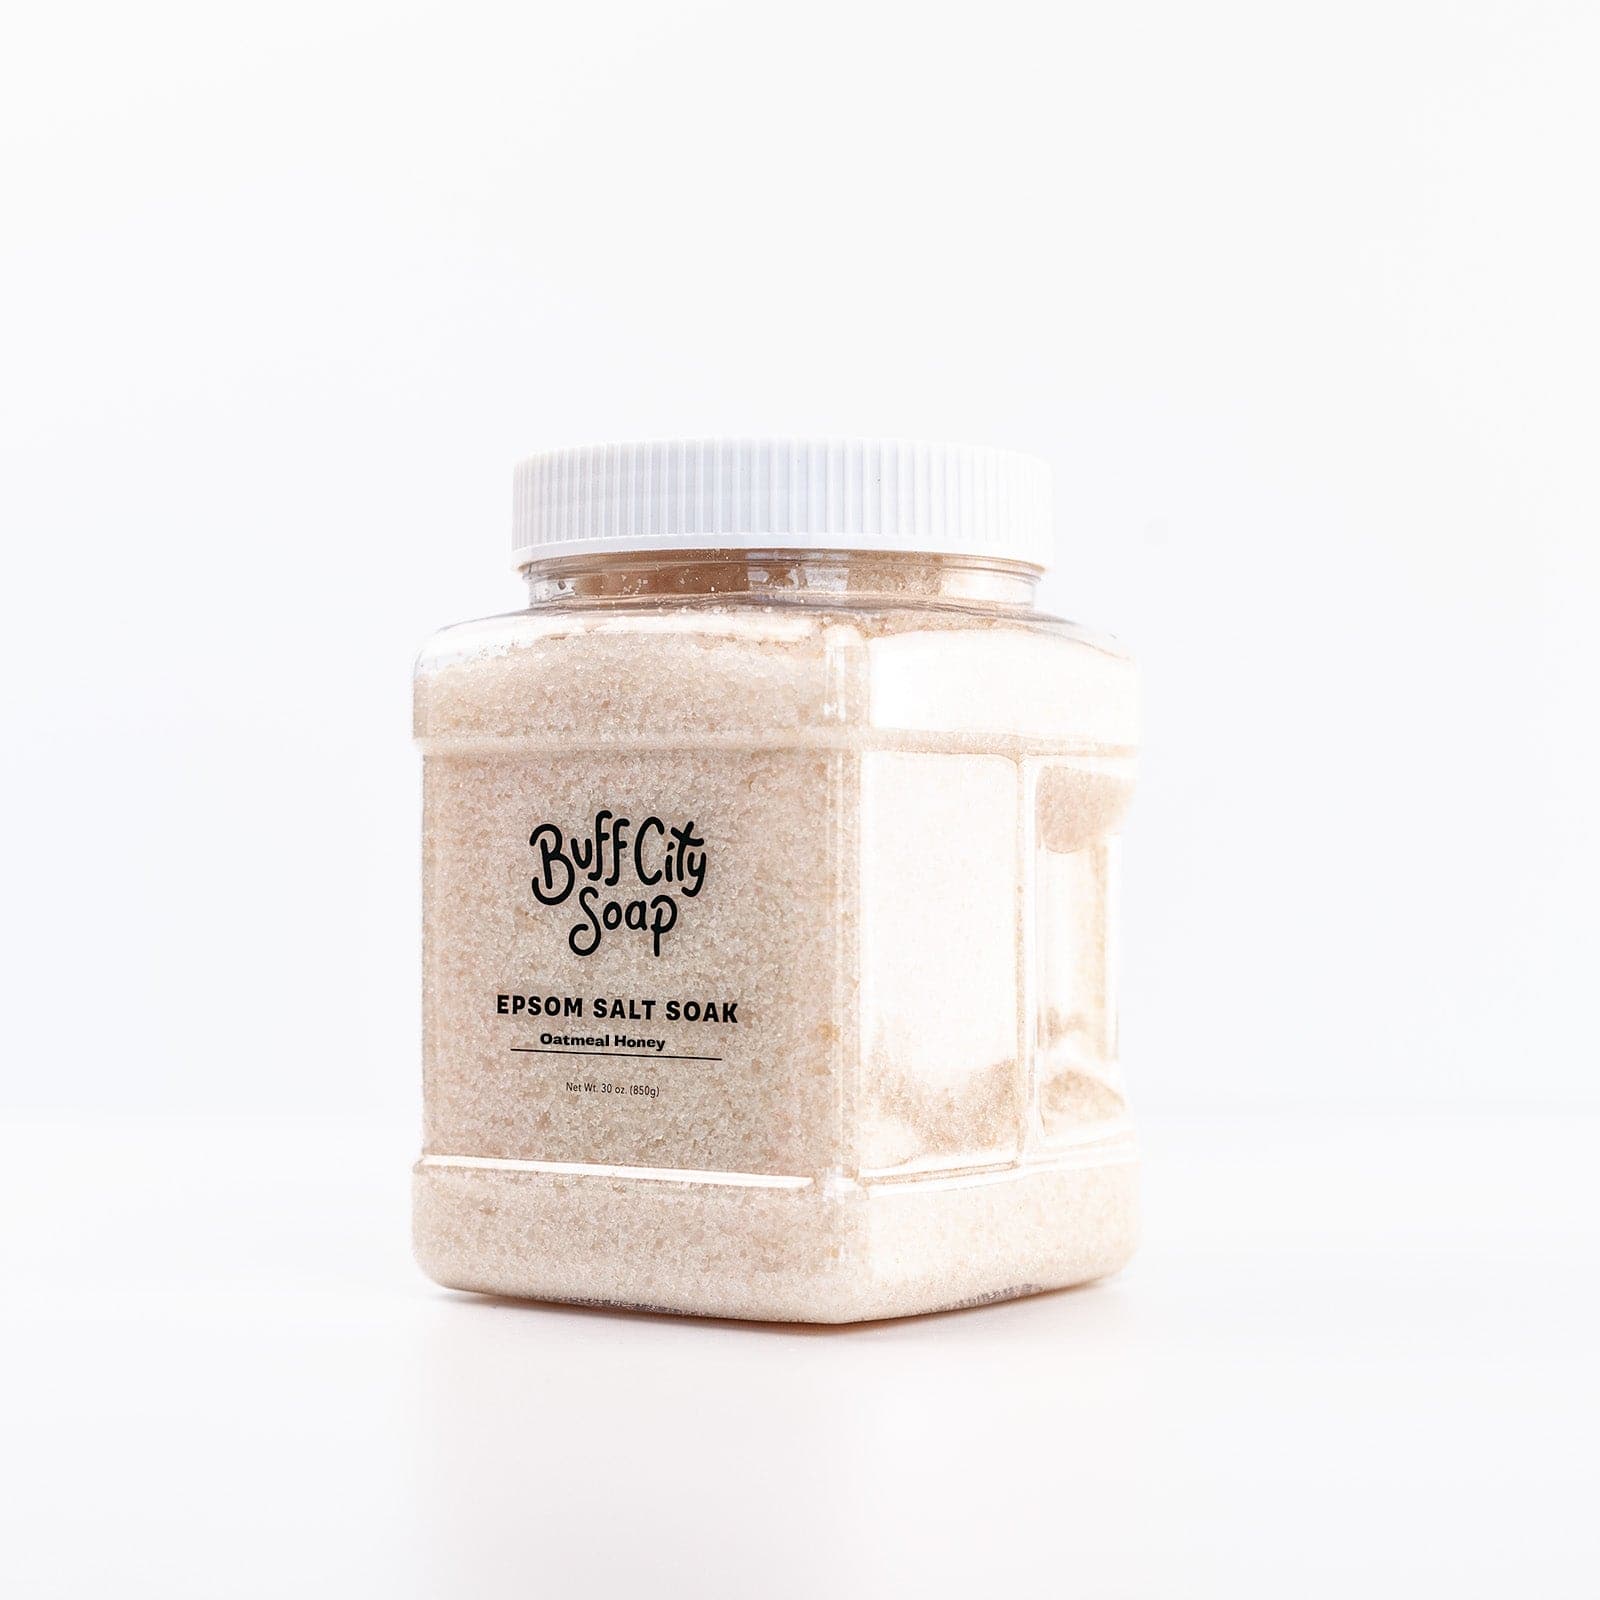 Angled view of Oatmeal Honey Epsom Salt Soak